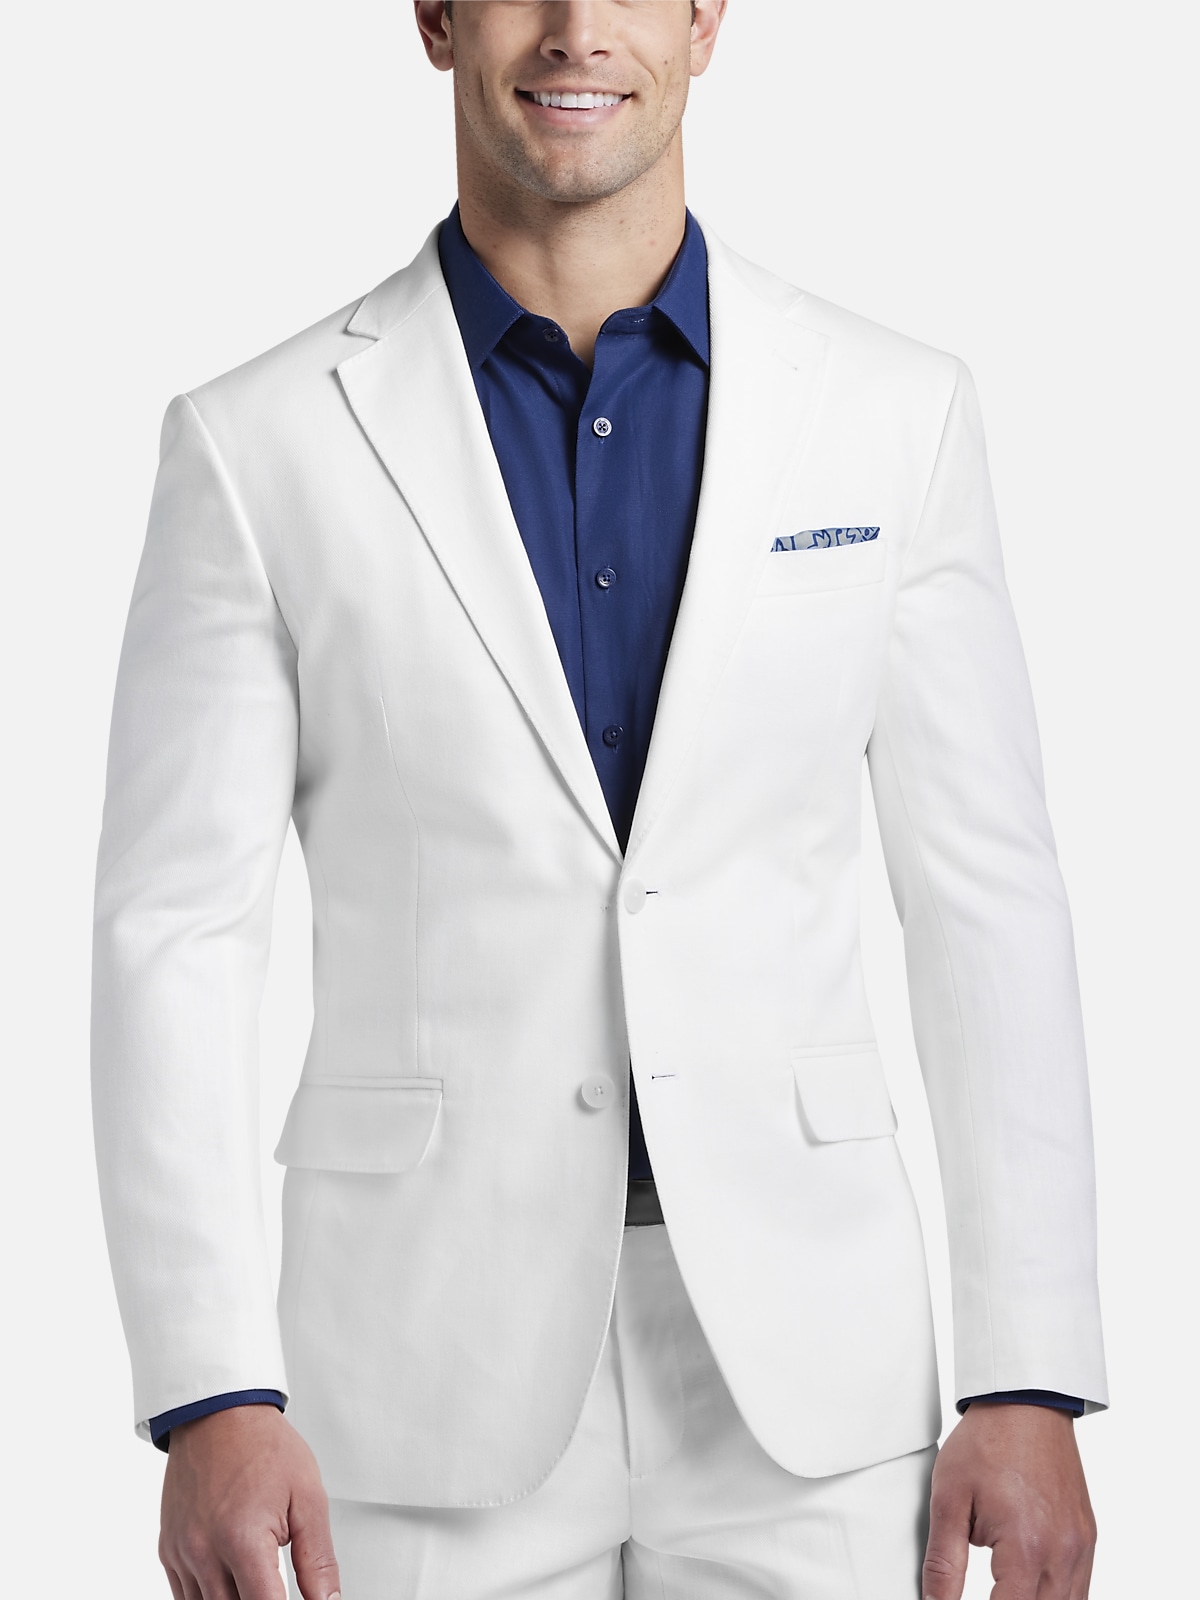 JOE Joseph Abboud Slim Fit Linen Blend Suit Separates Coat | All ...